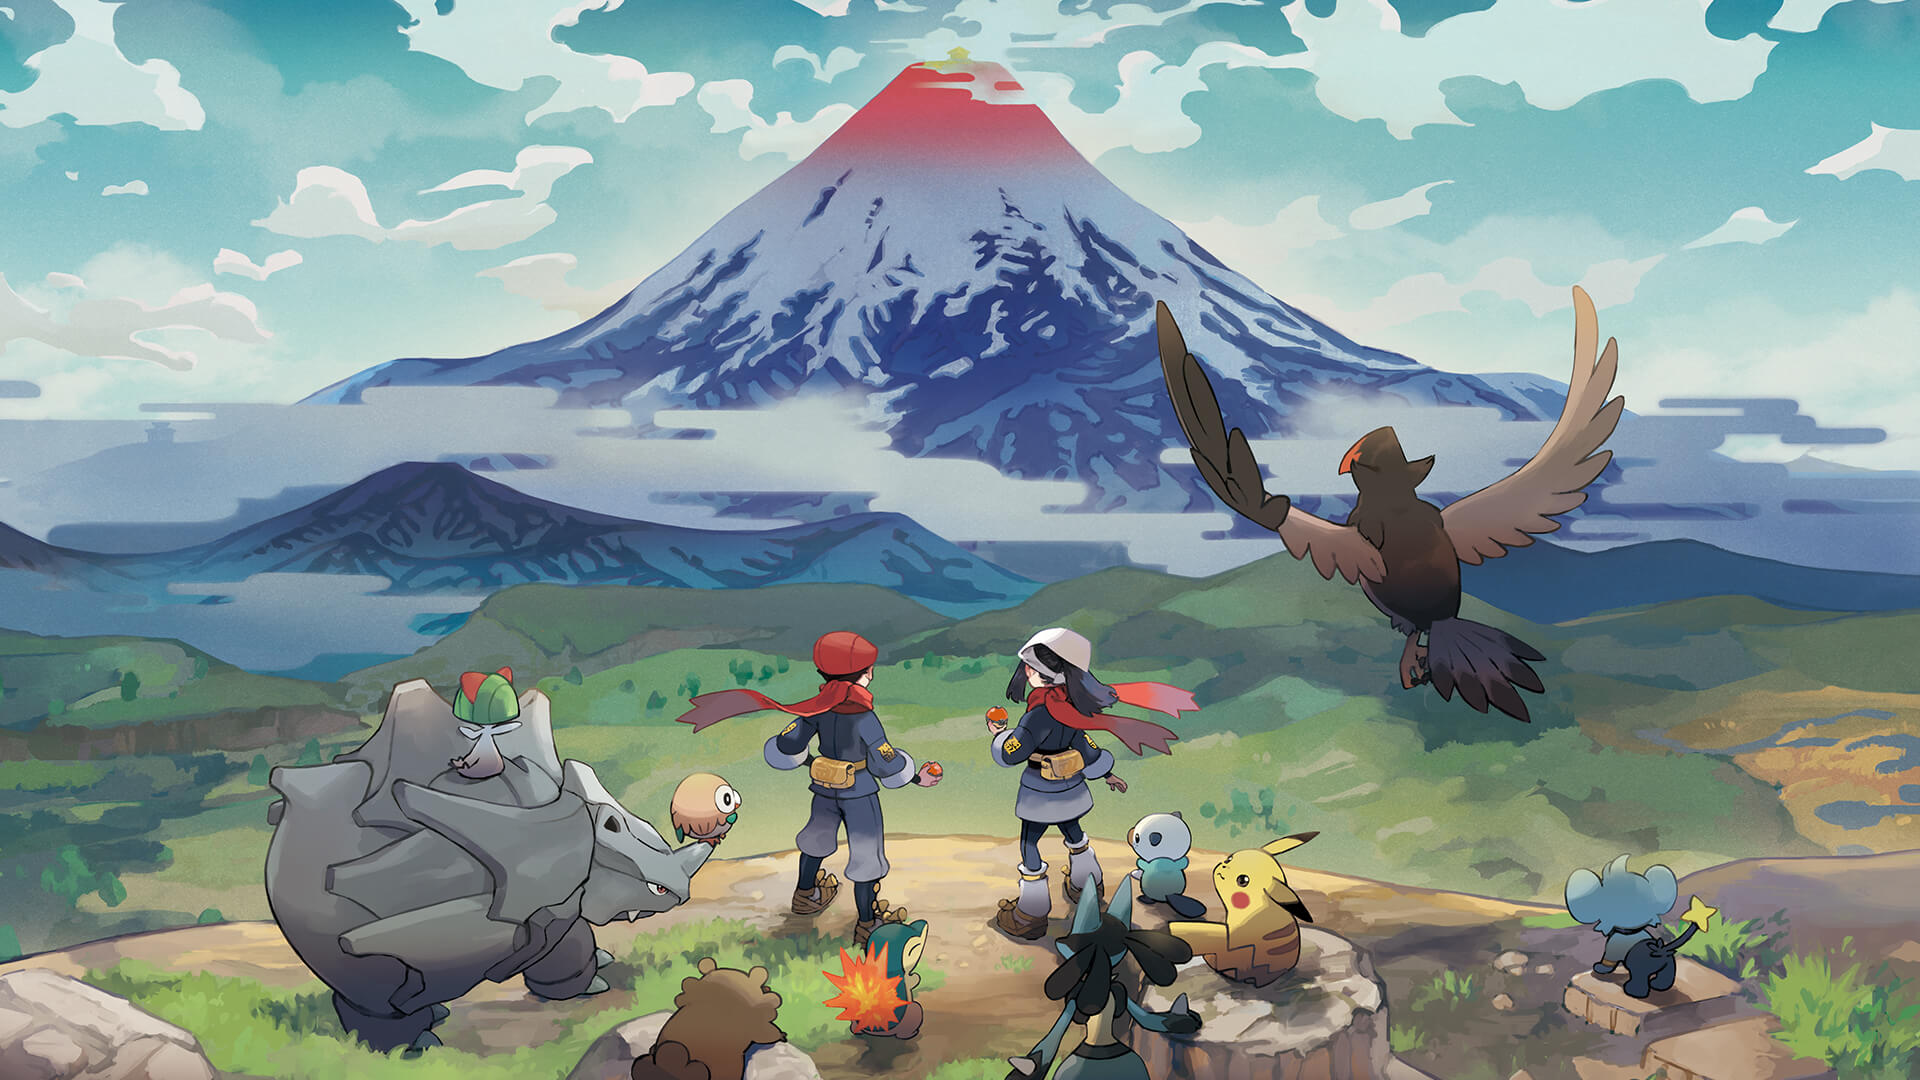 トップページ | 『Pokémon LEGENDS アルセウス』公式サイト